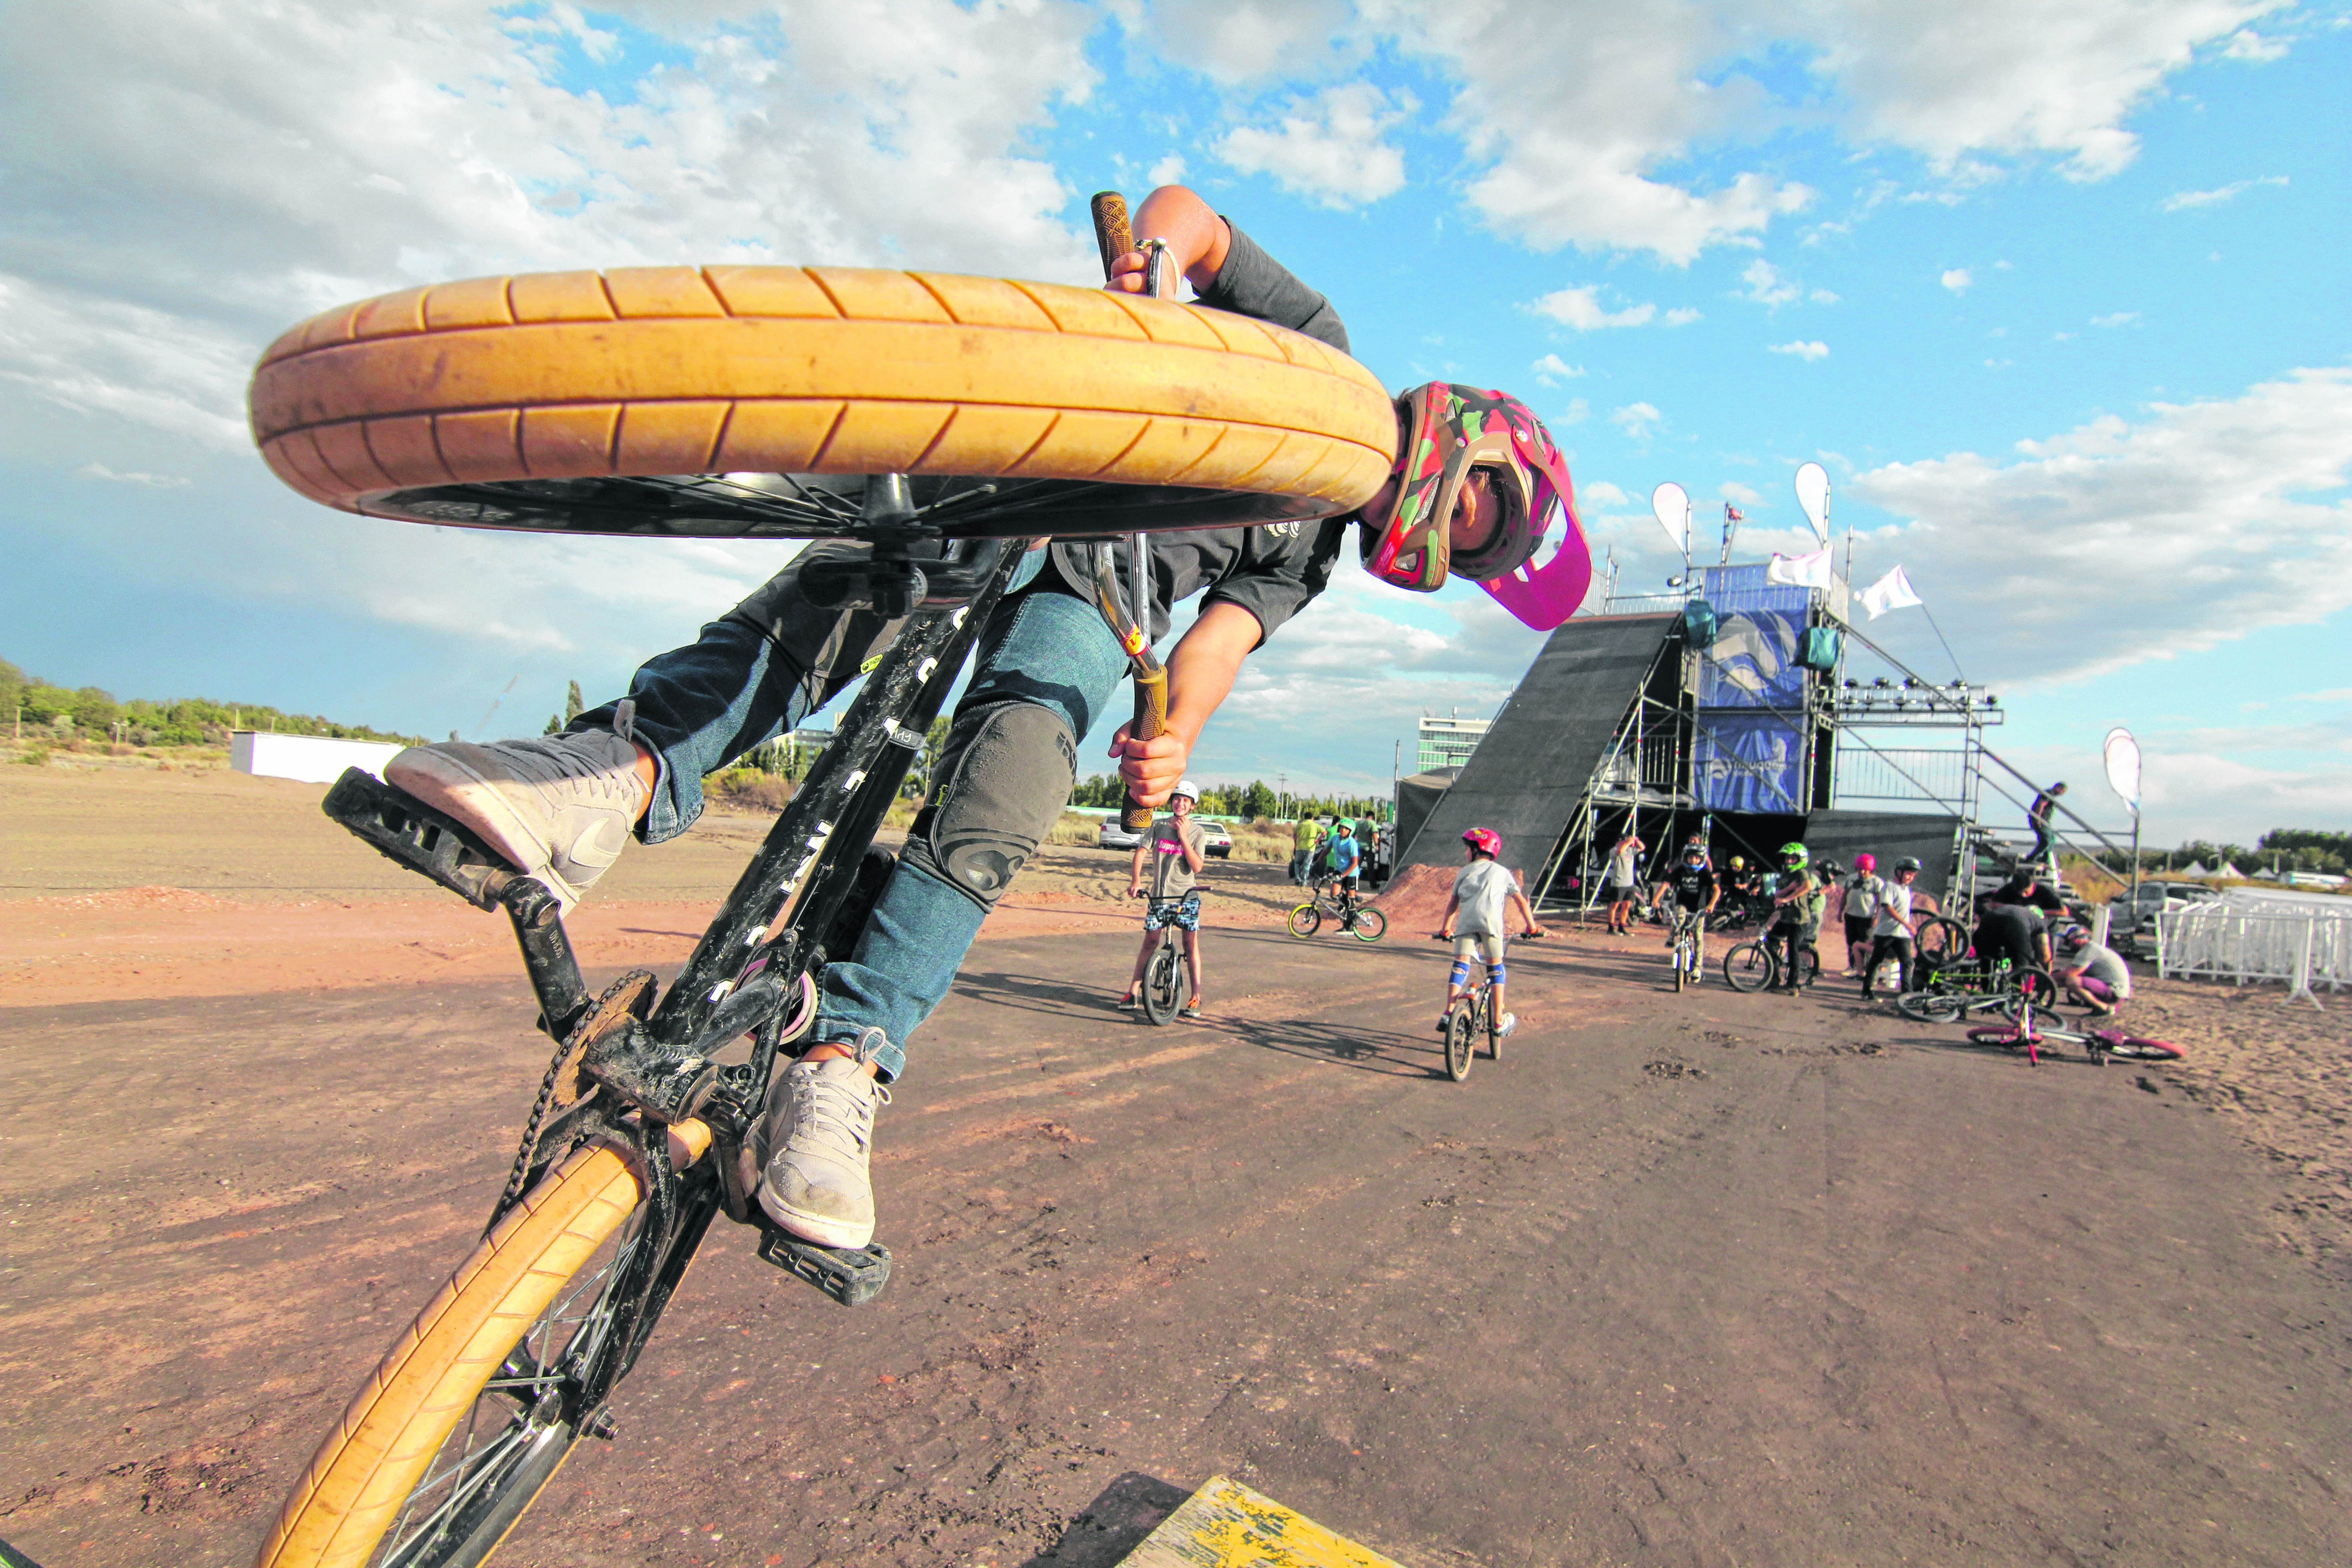 A un costado del escenario habrá rampas para los amantes de las piruetas en bicicletas. (FOTO: Oscar Livera)